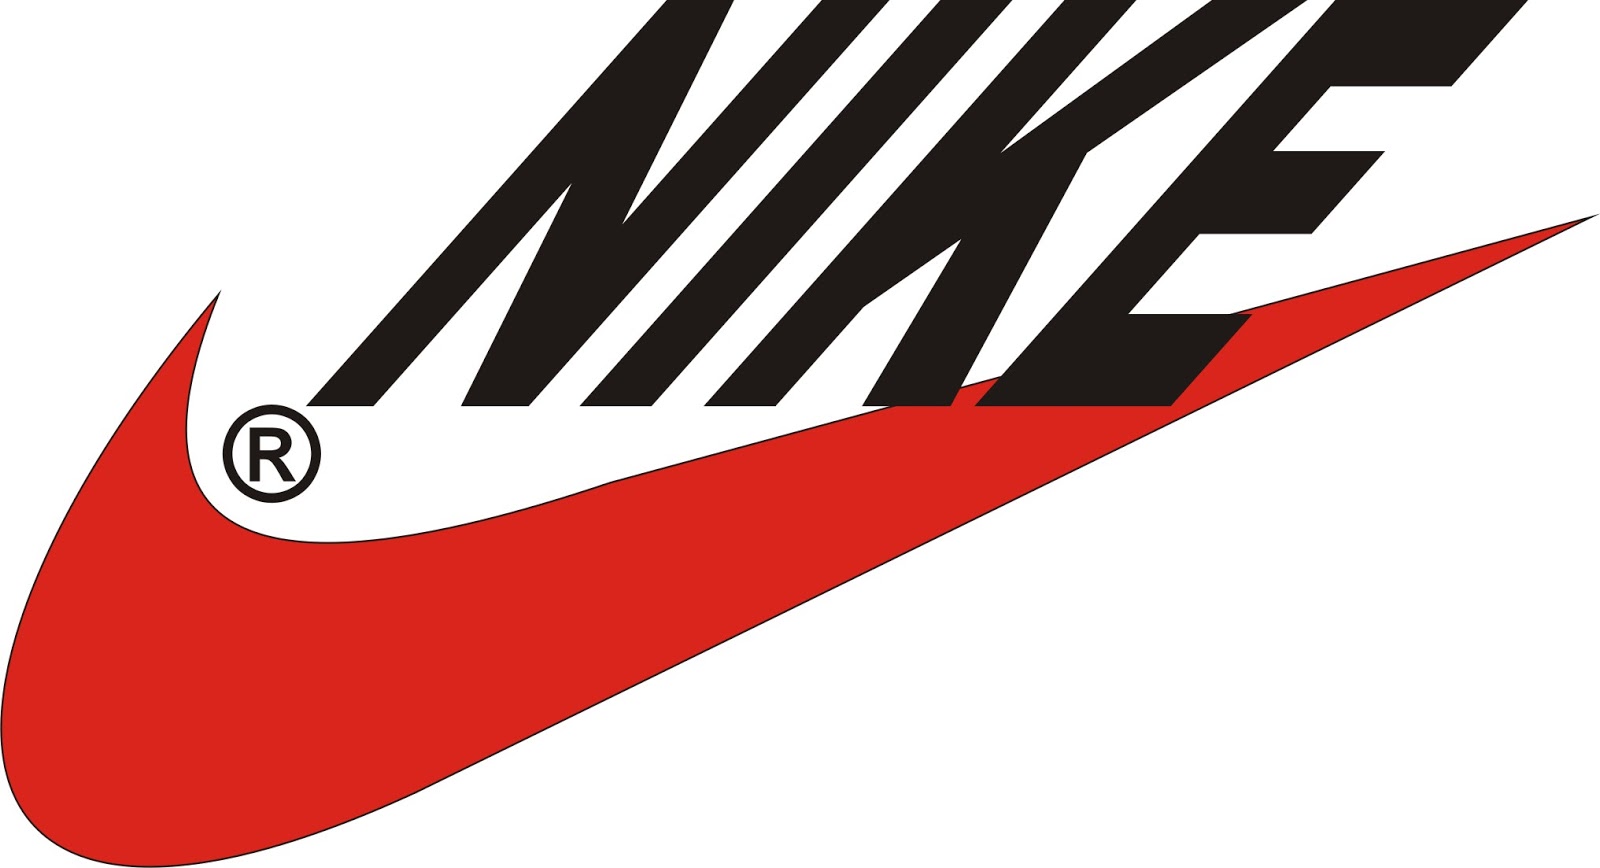 Vetor e Design: Logotipo da Nike com as ferramentas Caneta, Forma ...